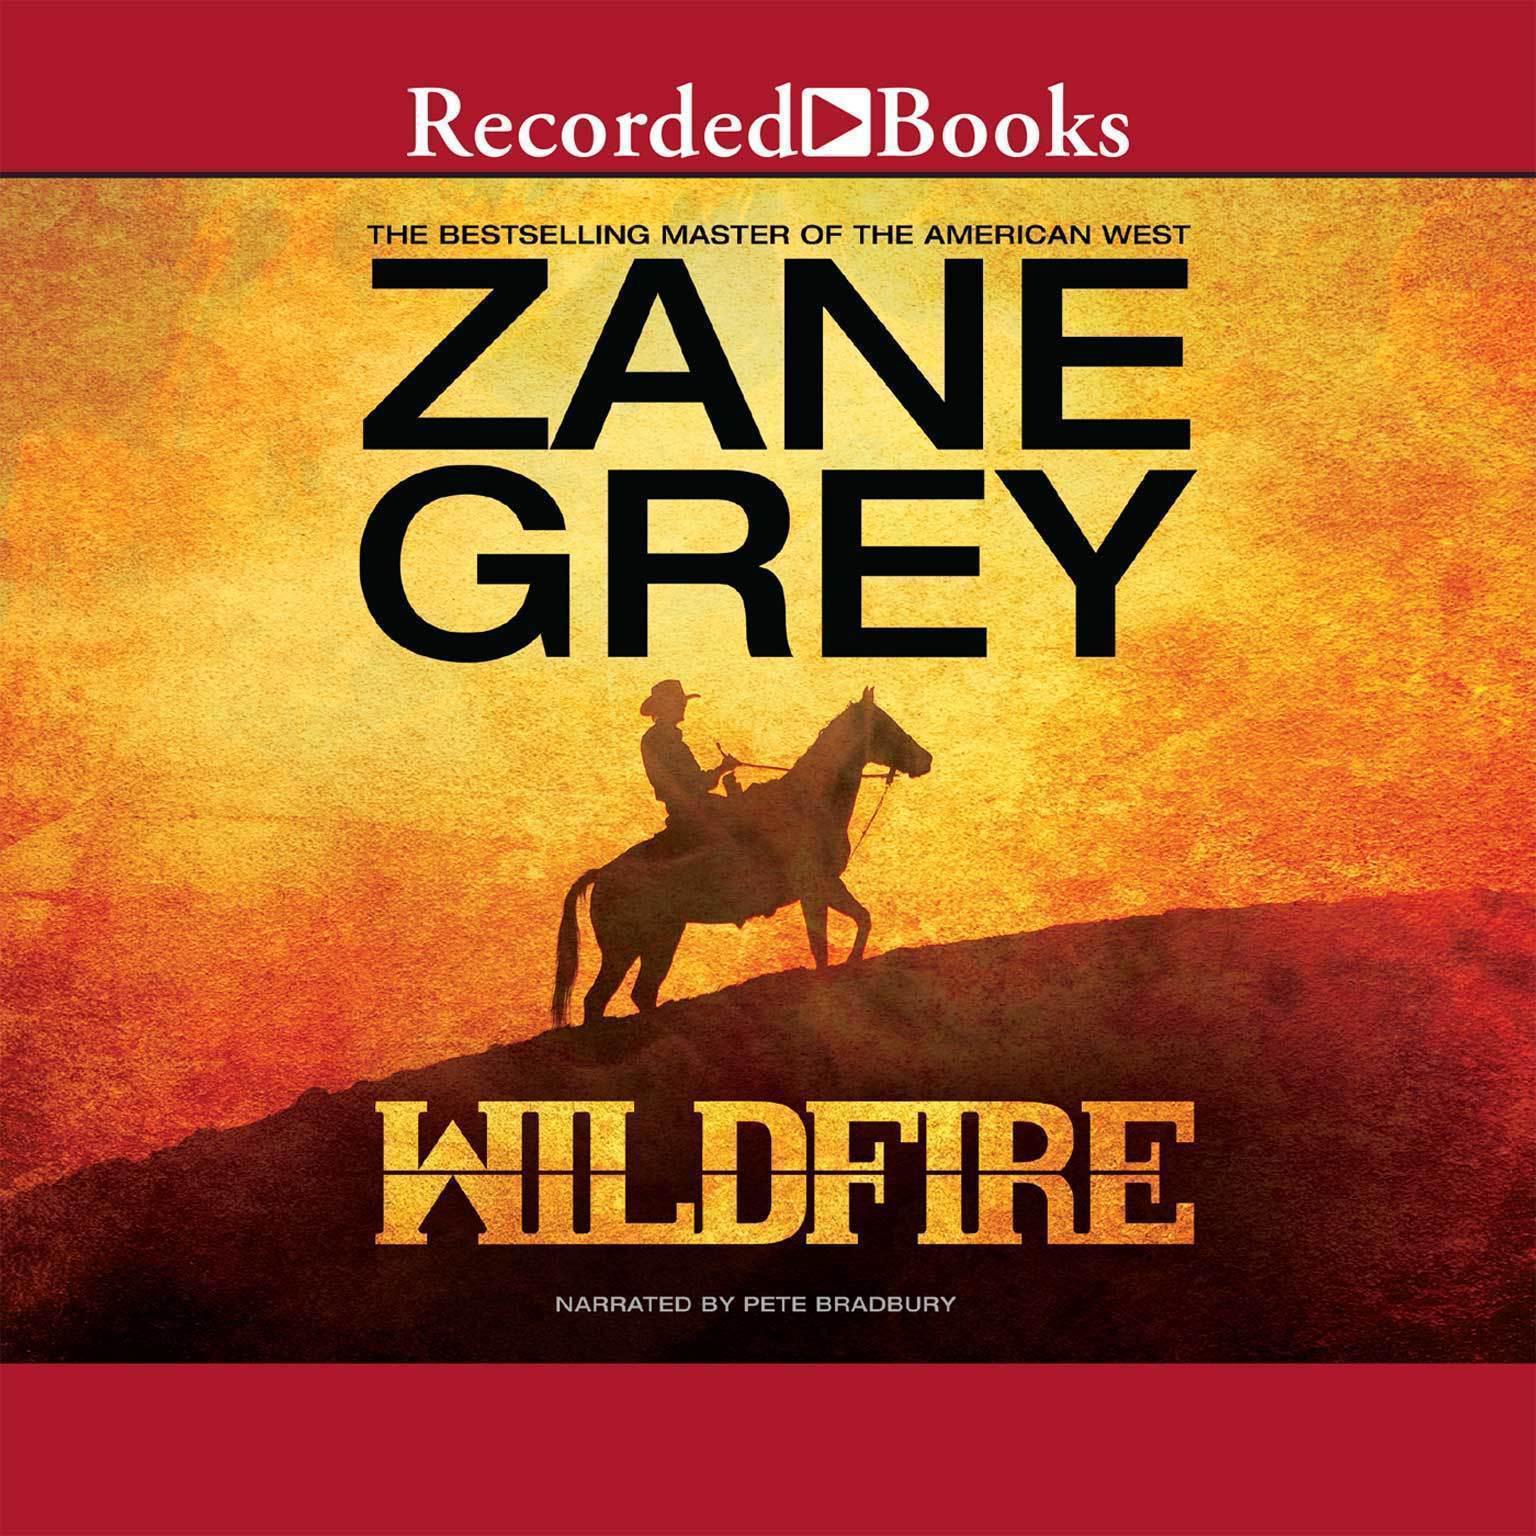 Wildfire Audiobook, by Zane Grey